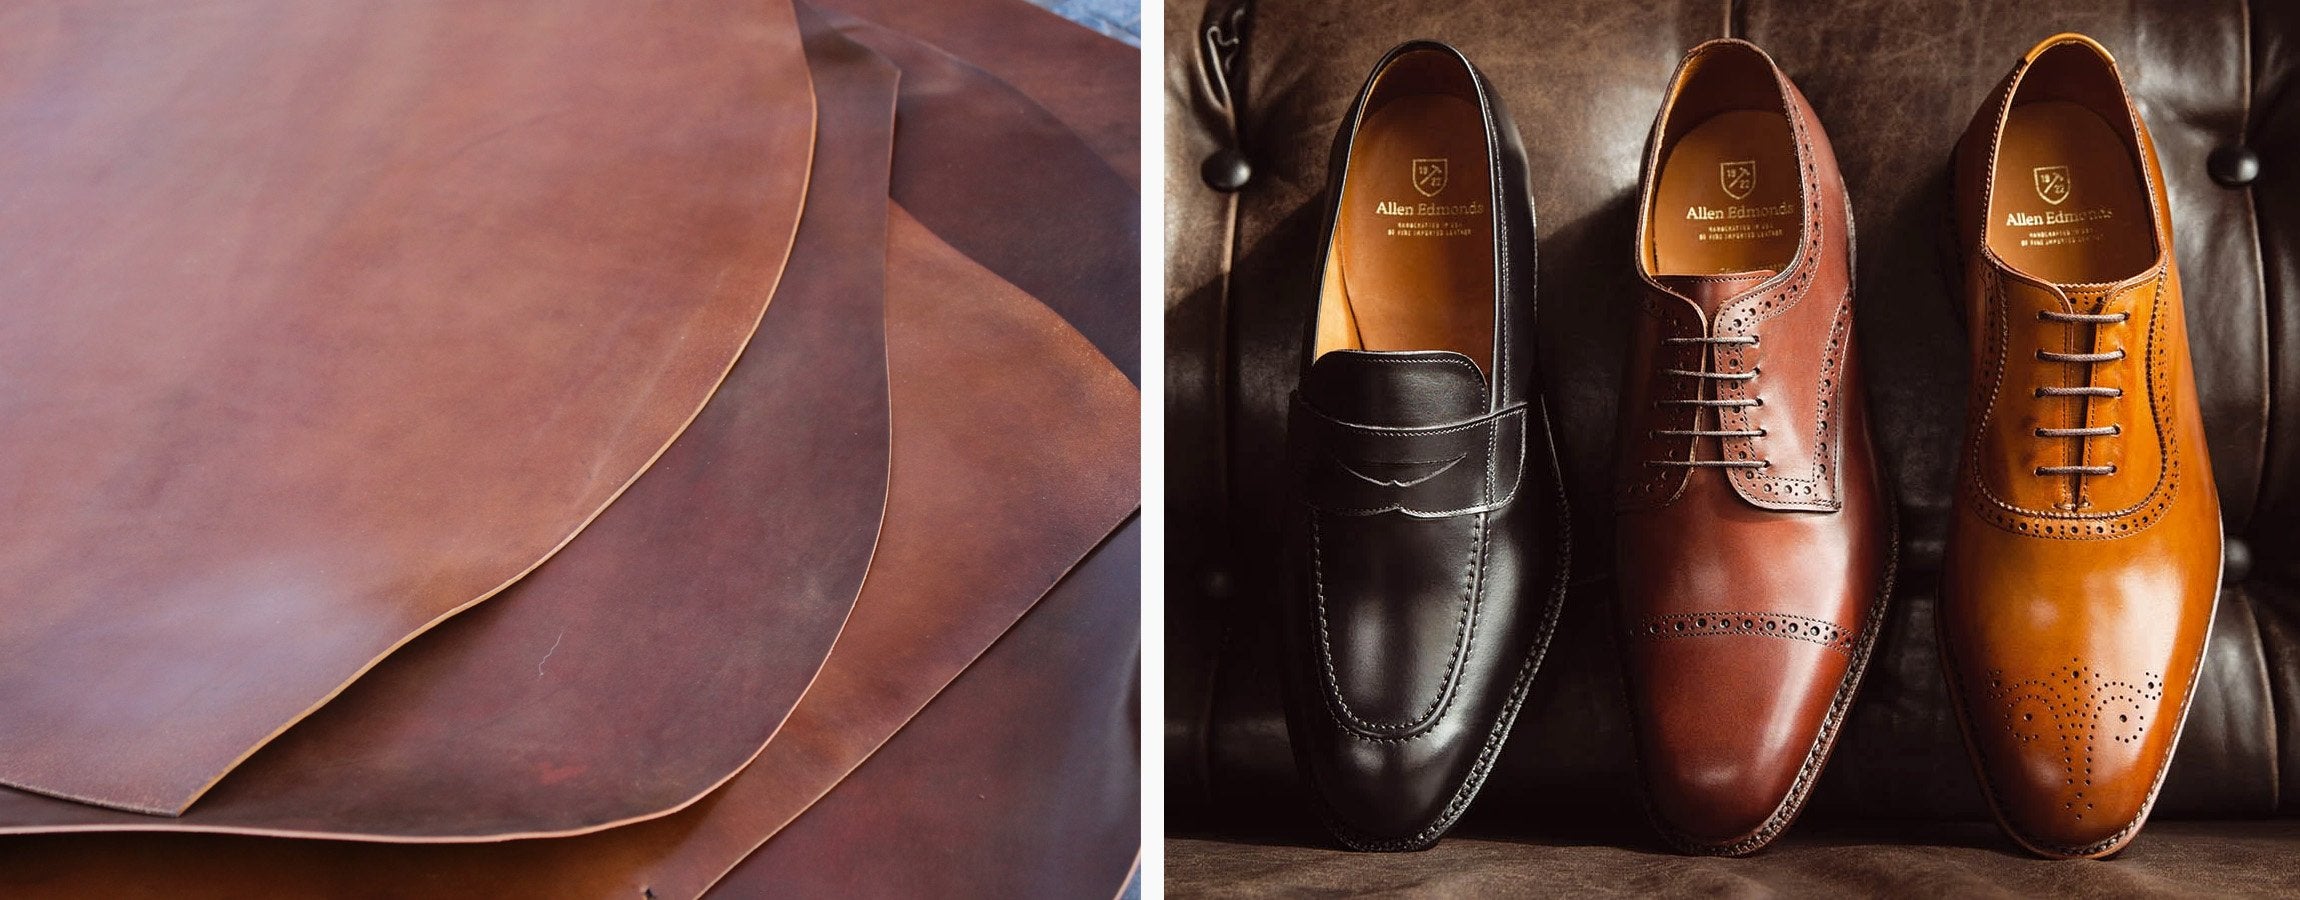 4-Shell-Cordovan-leather-Allen-Edmonds-shoes